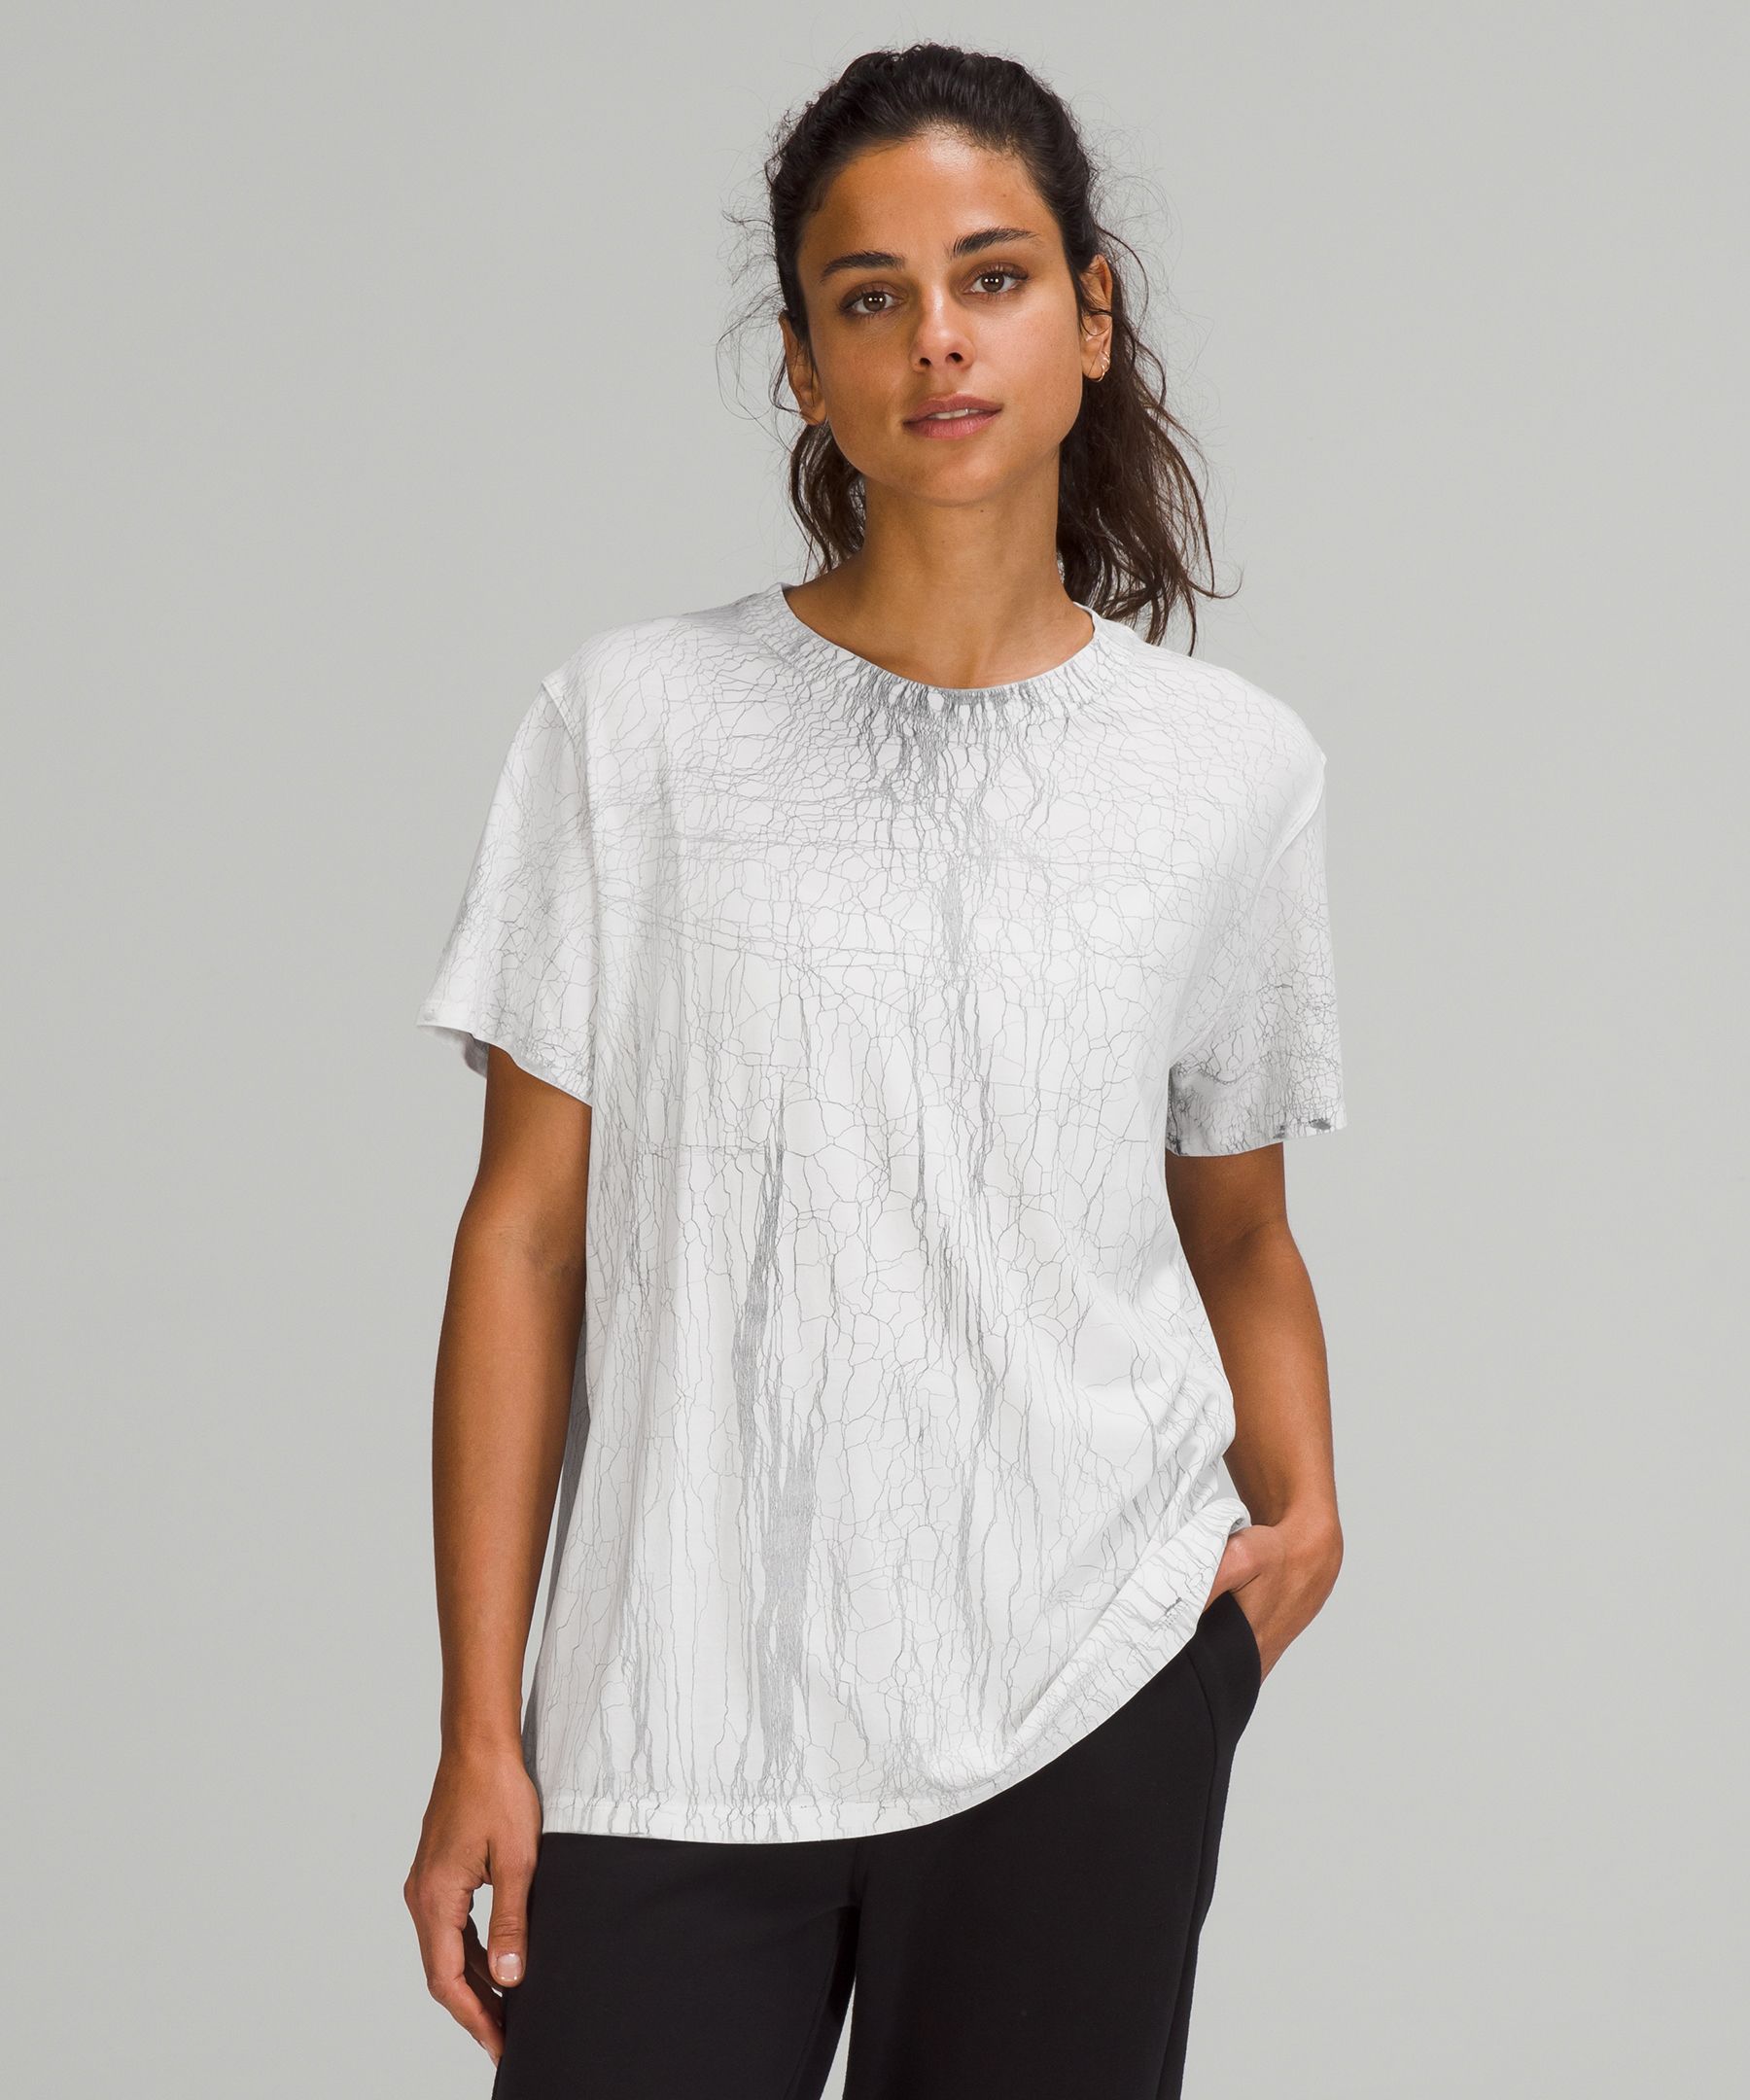 Lululemon All Yours Short Sleeve T-shirt In Thread Dye White Black